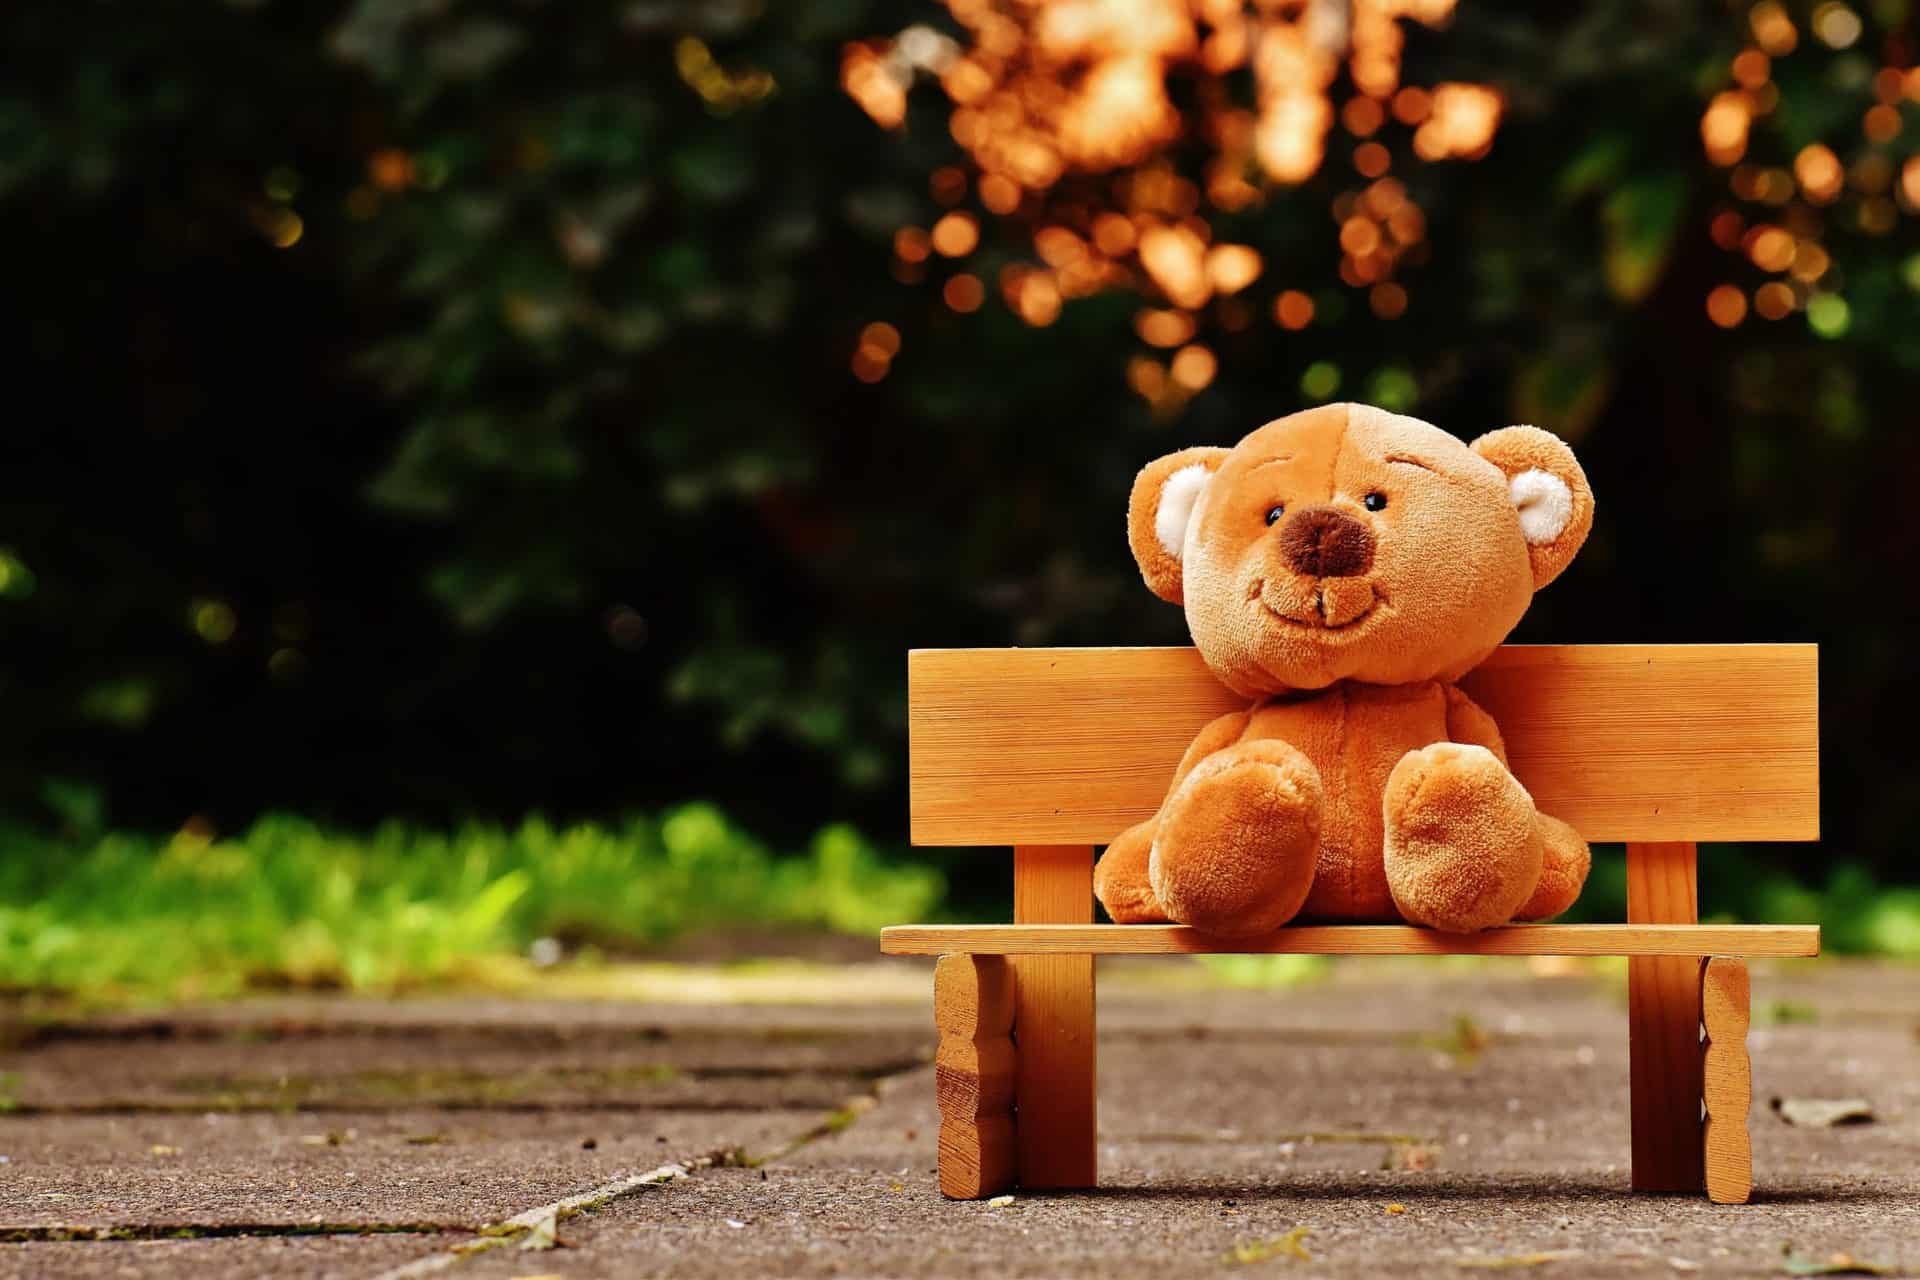 Alternative Müllverbrennung, Selbstrettung & Teddybären für Kinder in Not